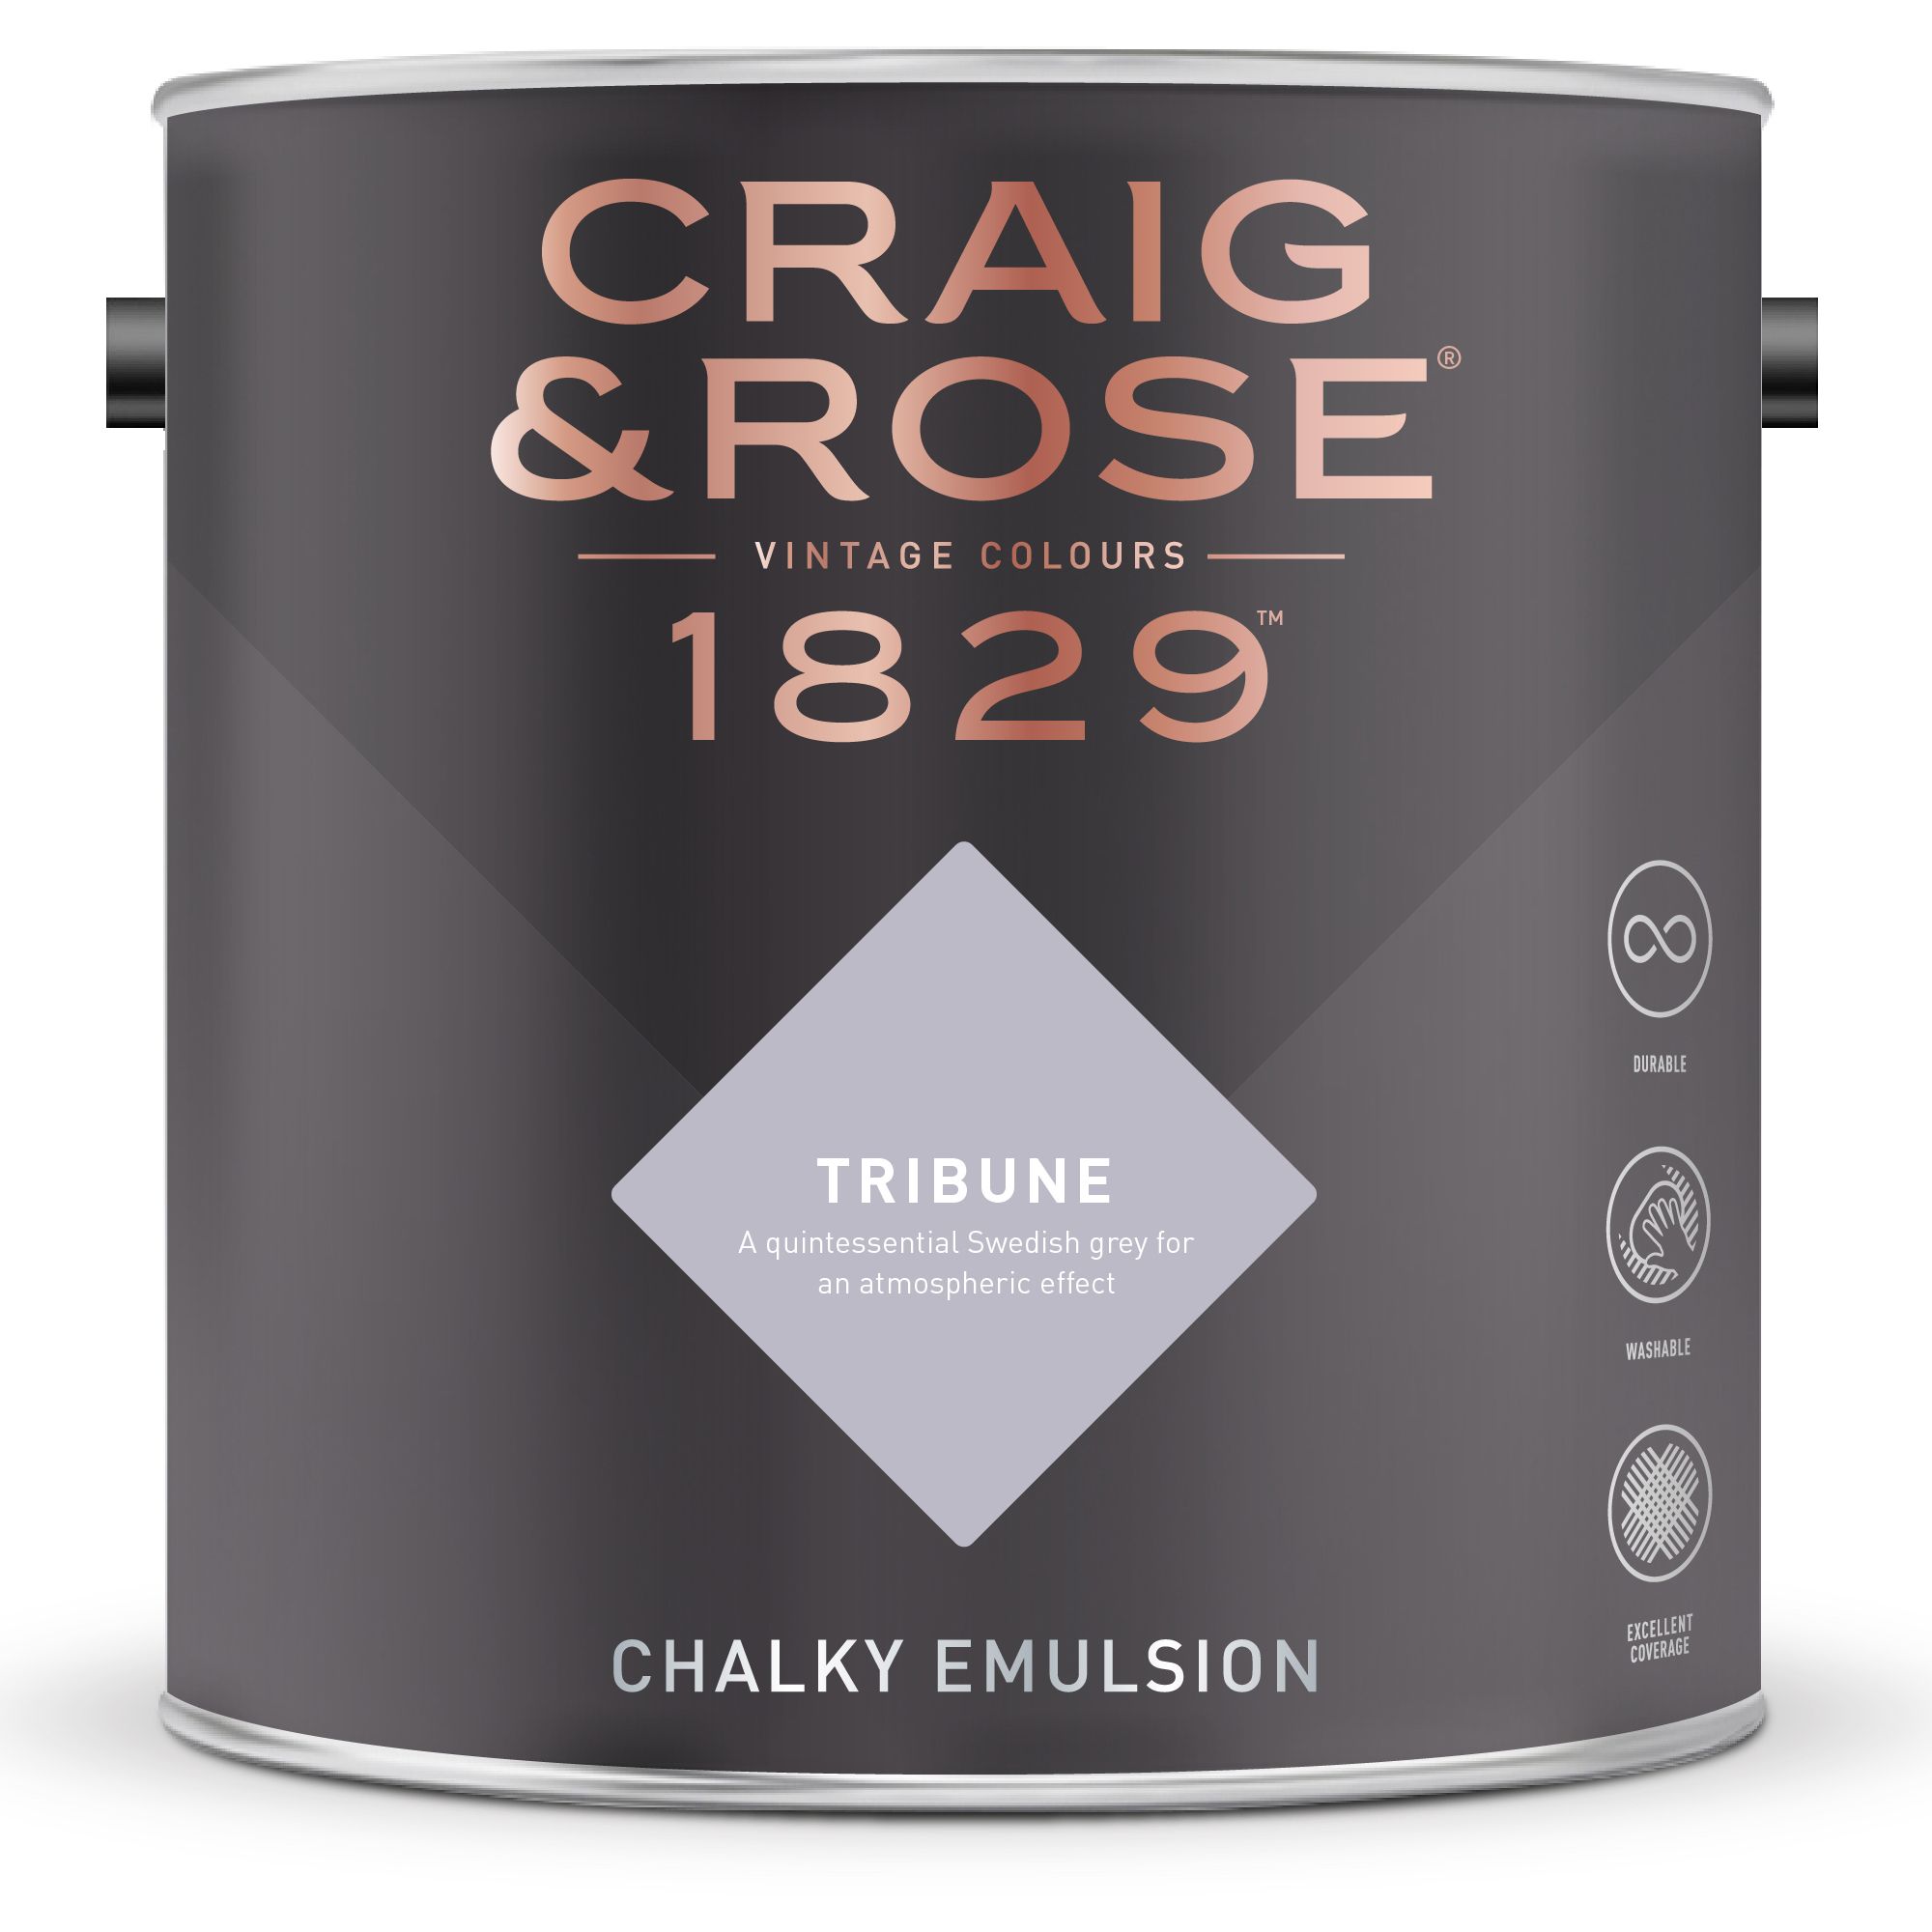 Craig & Rose 1829 Tribune  Chalky Emulsion paint, 2.5L